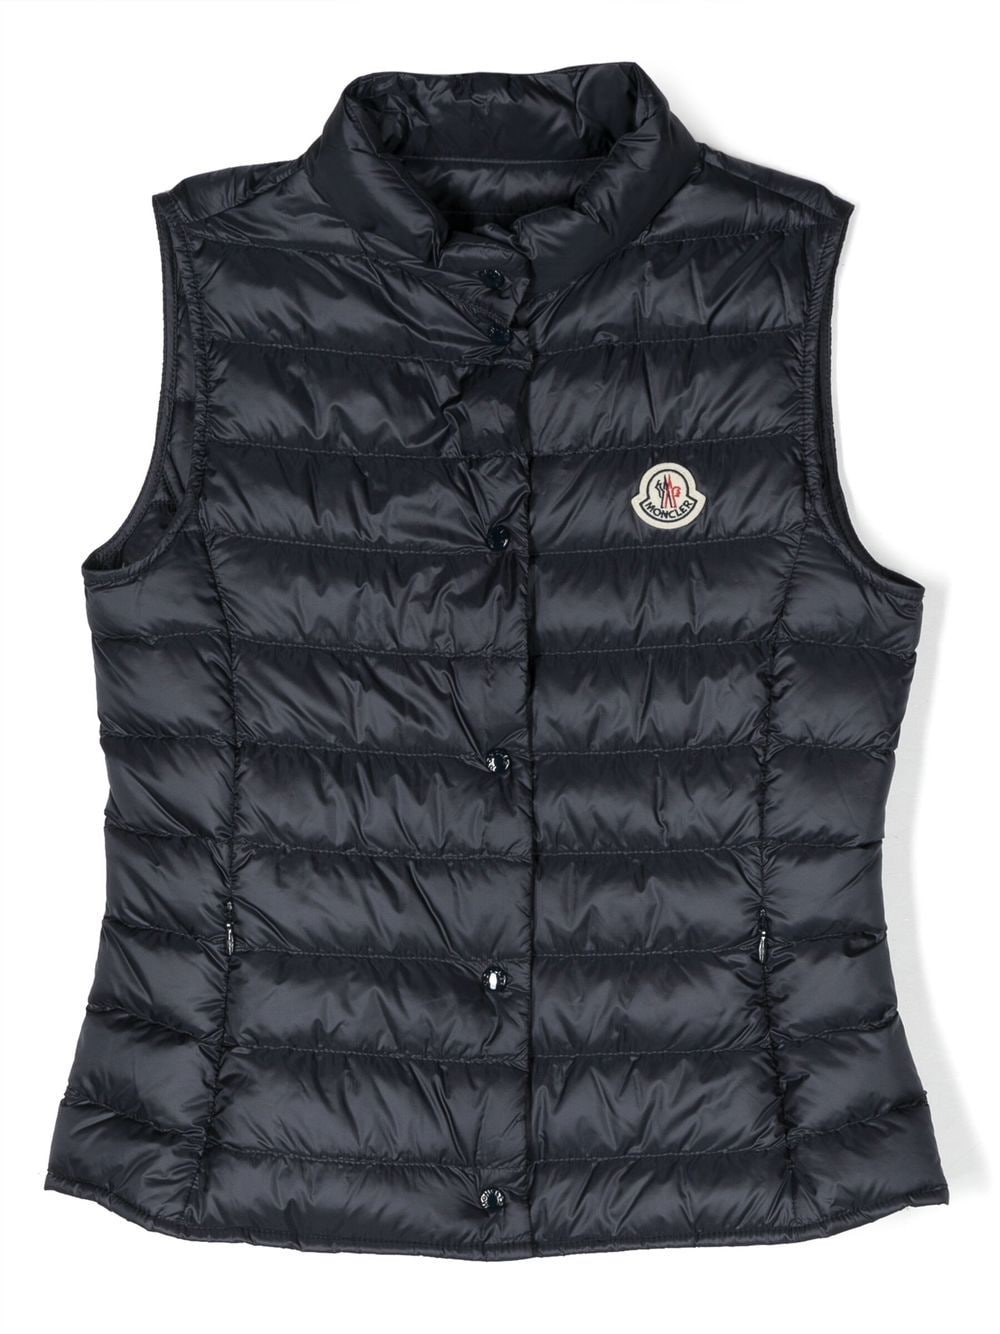 Liane blue sleeveless vest for girls with logo